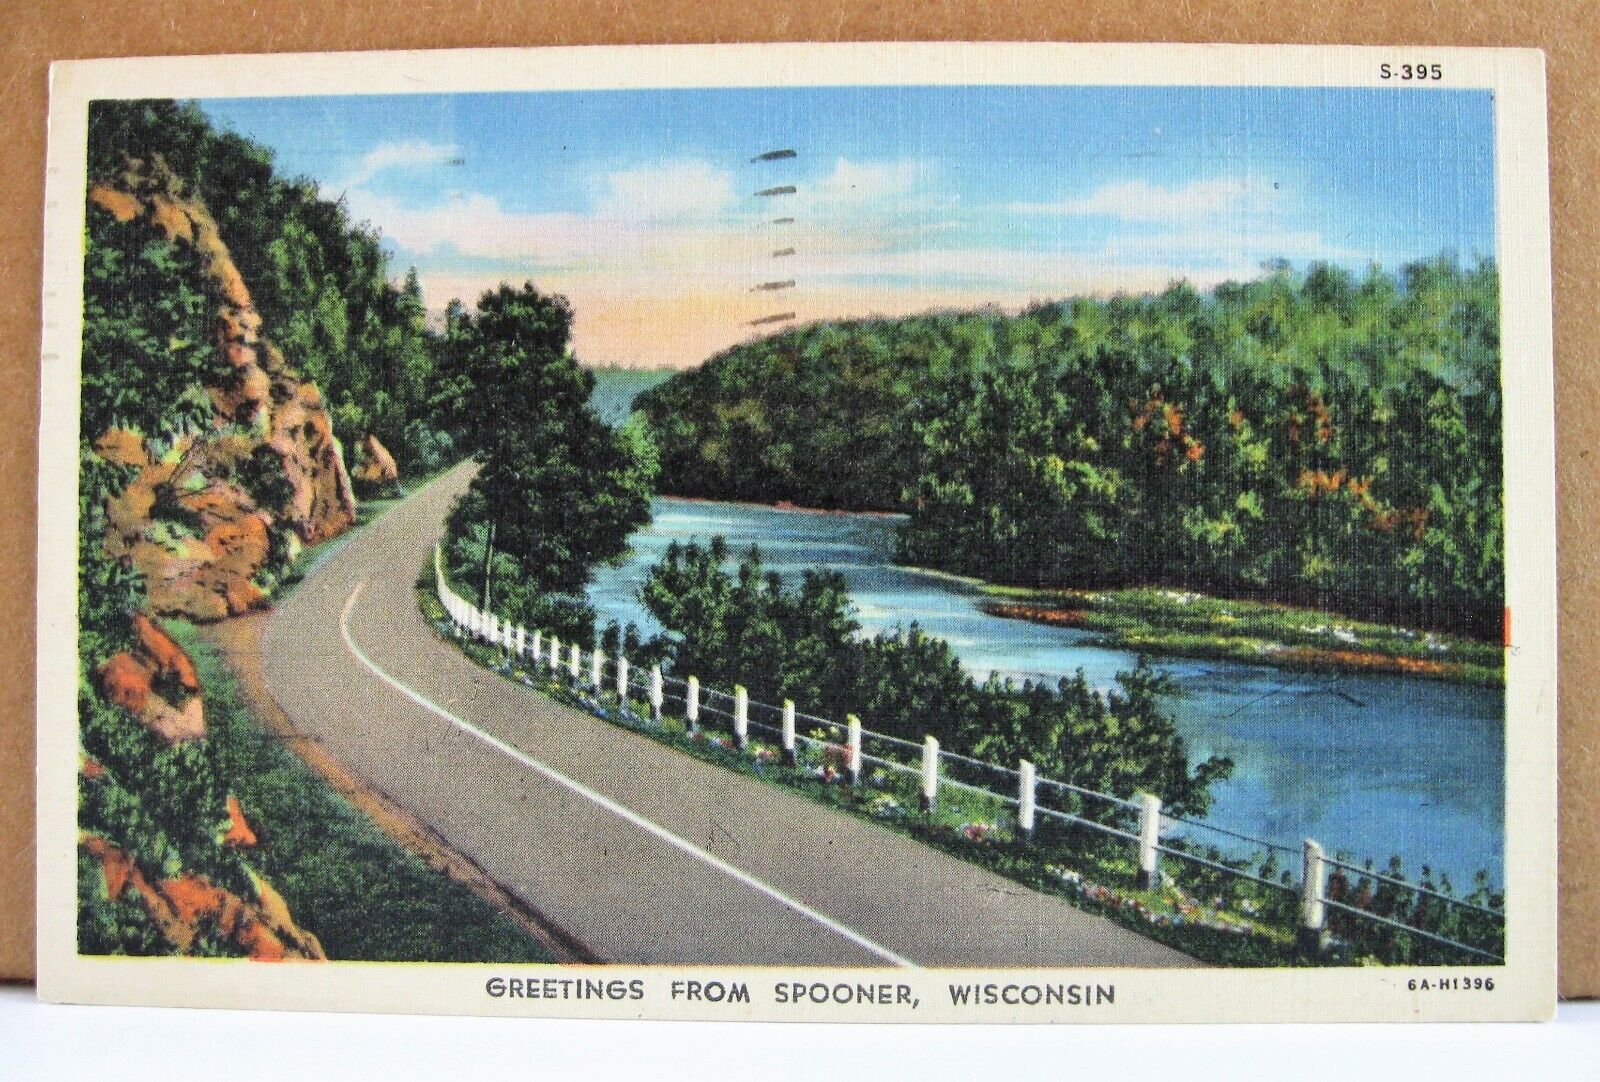 Spooner Wisconsin - June 21 1948 - postcard - highway view